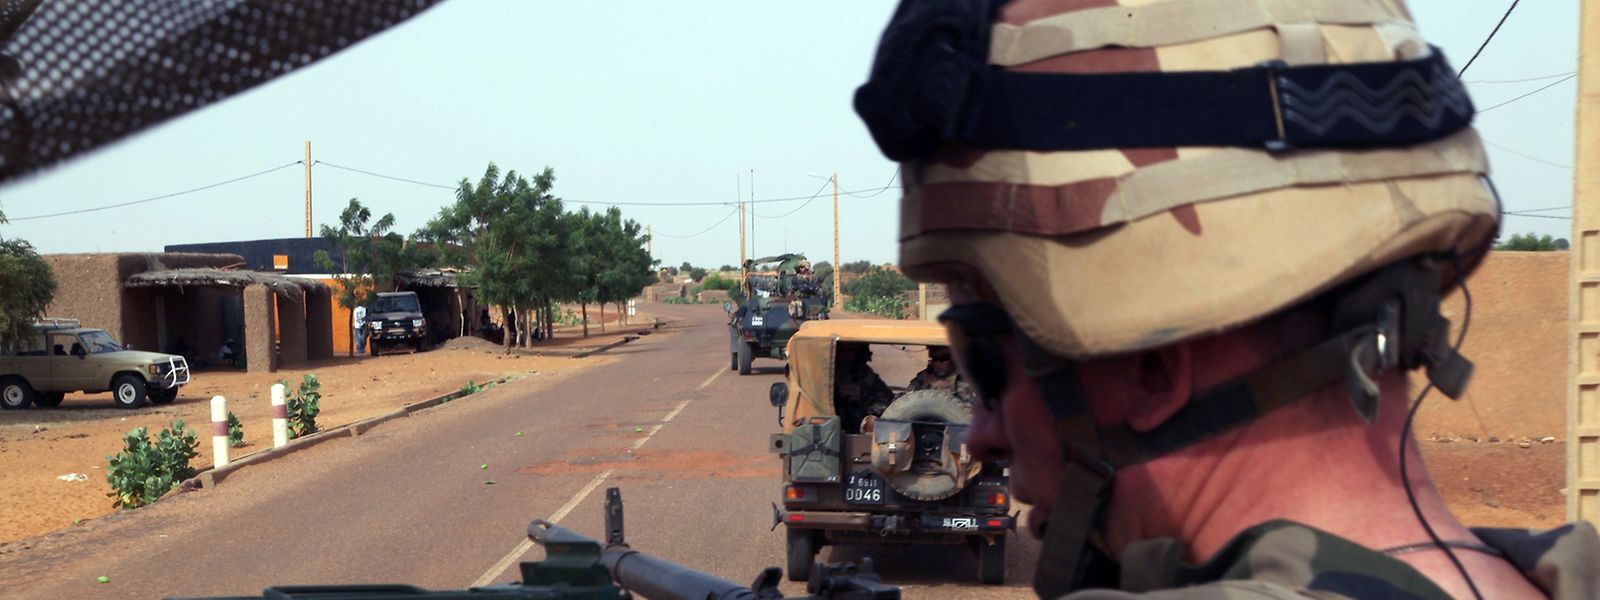 Rebellen verüben in Mali vor allem Anschläge auf UN-Truppen und Ausländer.